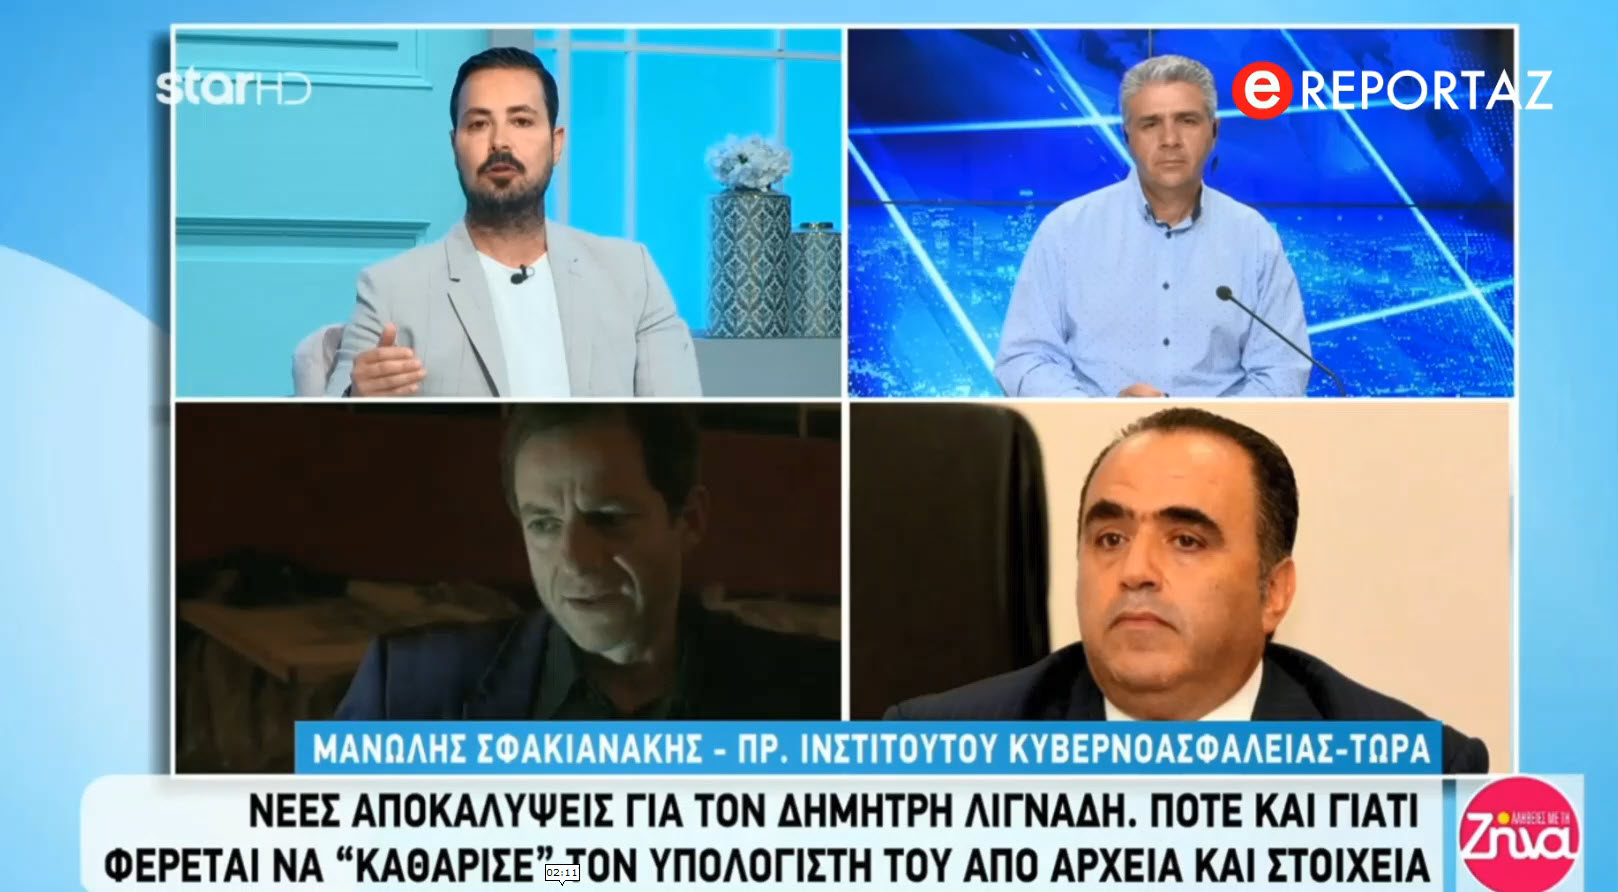 Δημήτρης Λιγνάδης: Η διαγραφή των αρχείων του ,η καθυστέρηση ελέγχου και οι ευθύνες των αρχών